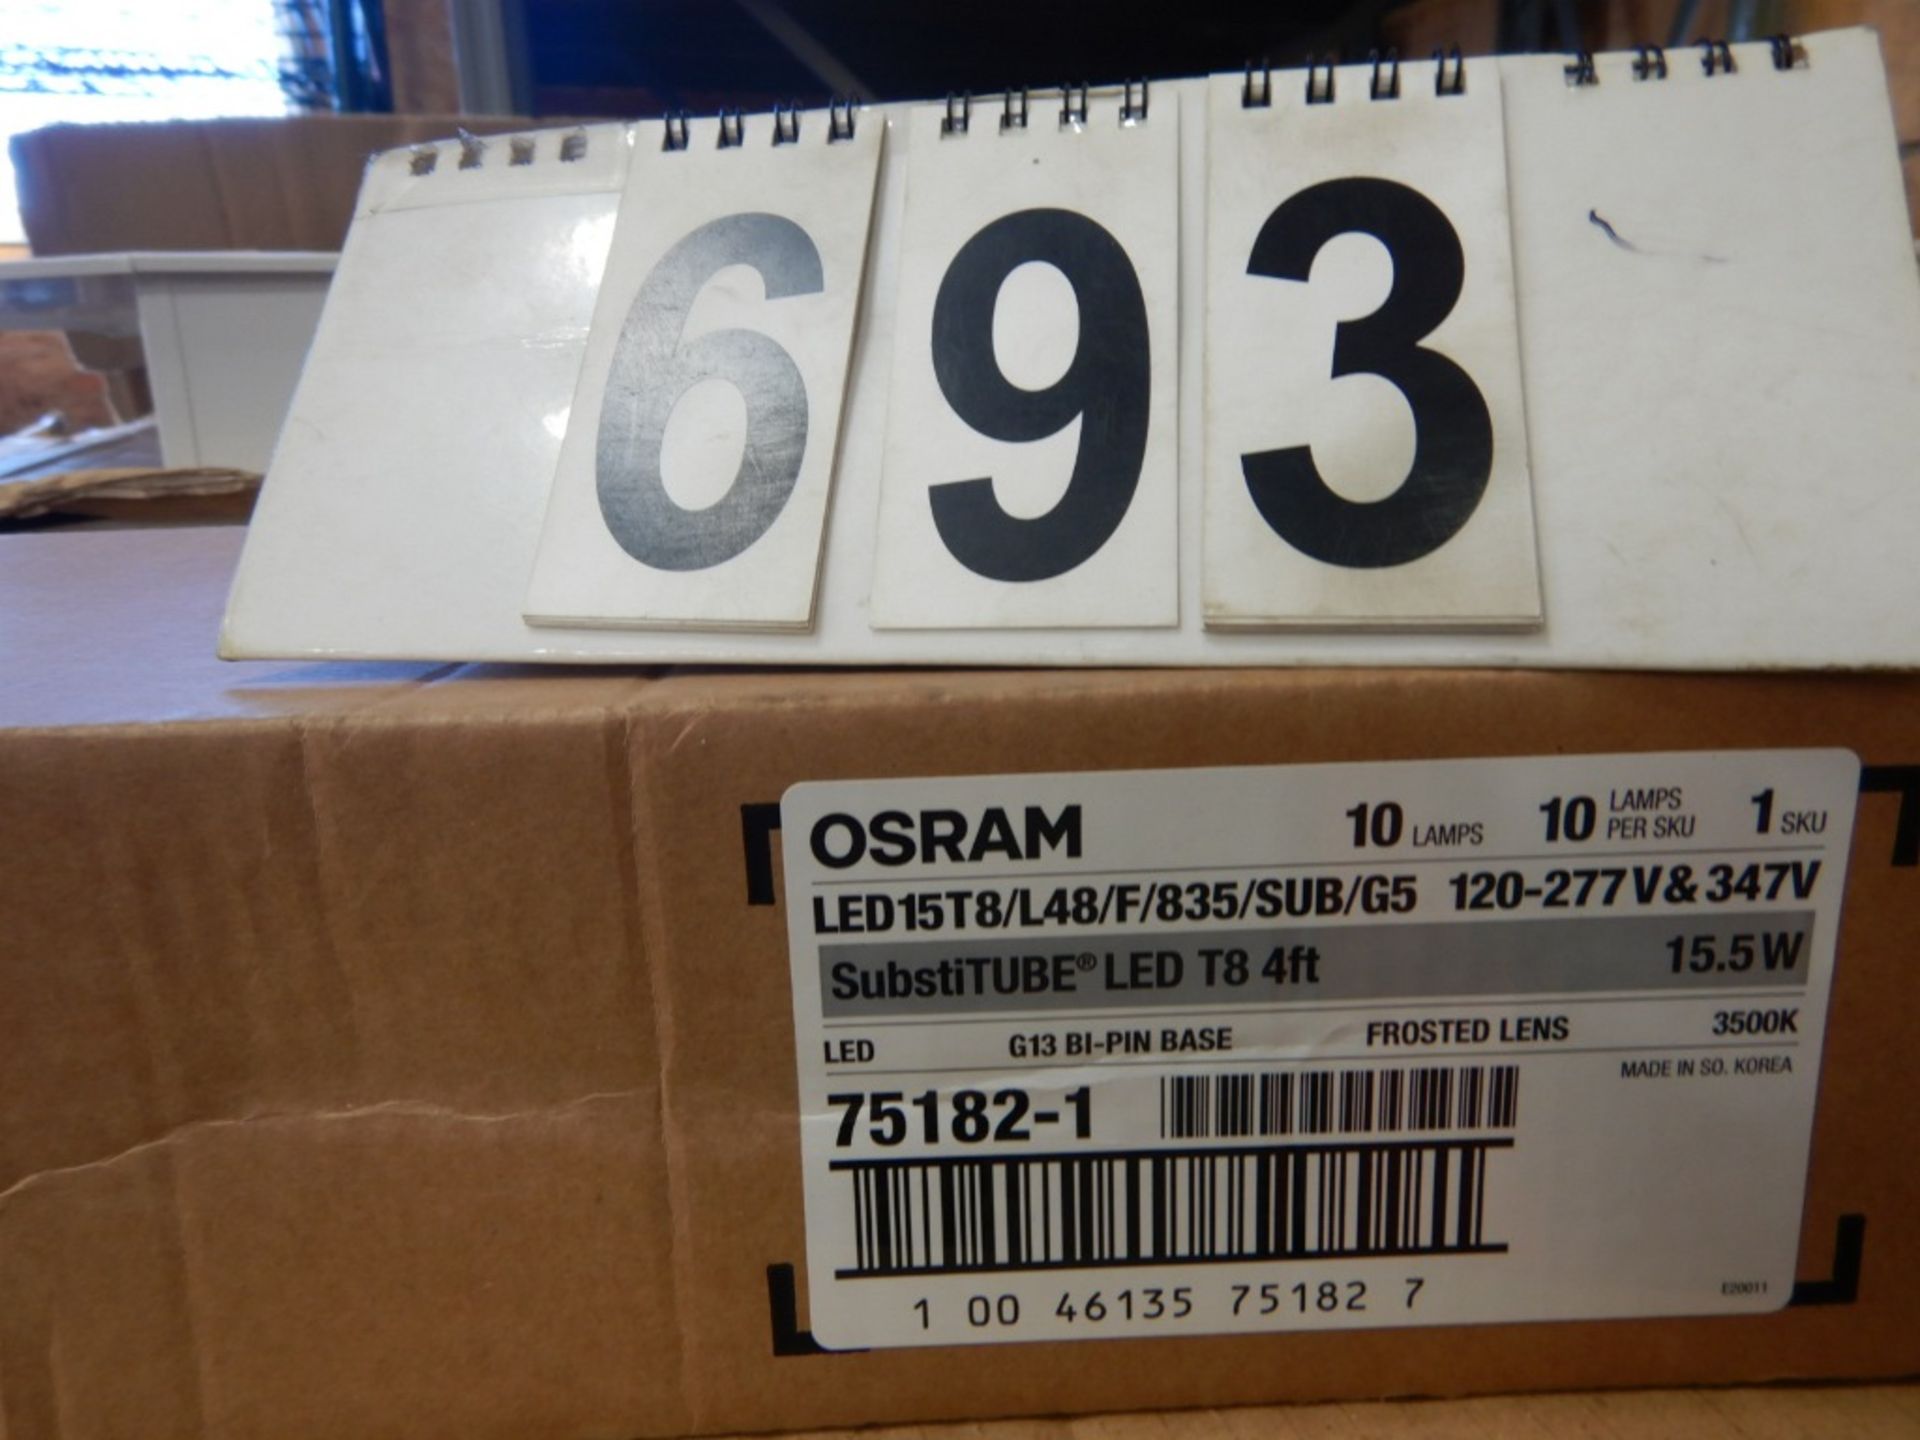 CASE LOT OF 10 OSRAM LED 15T8/48 LIGHT TUBES, 15.5 WATT - Image 2 of 2